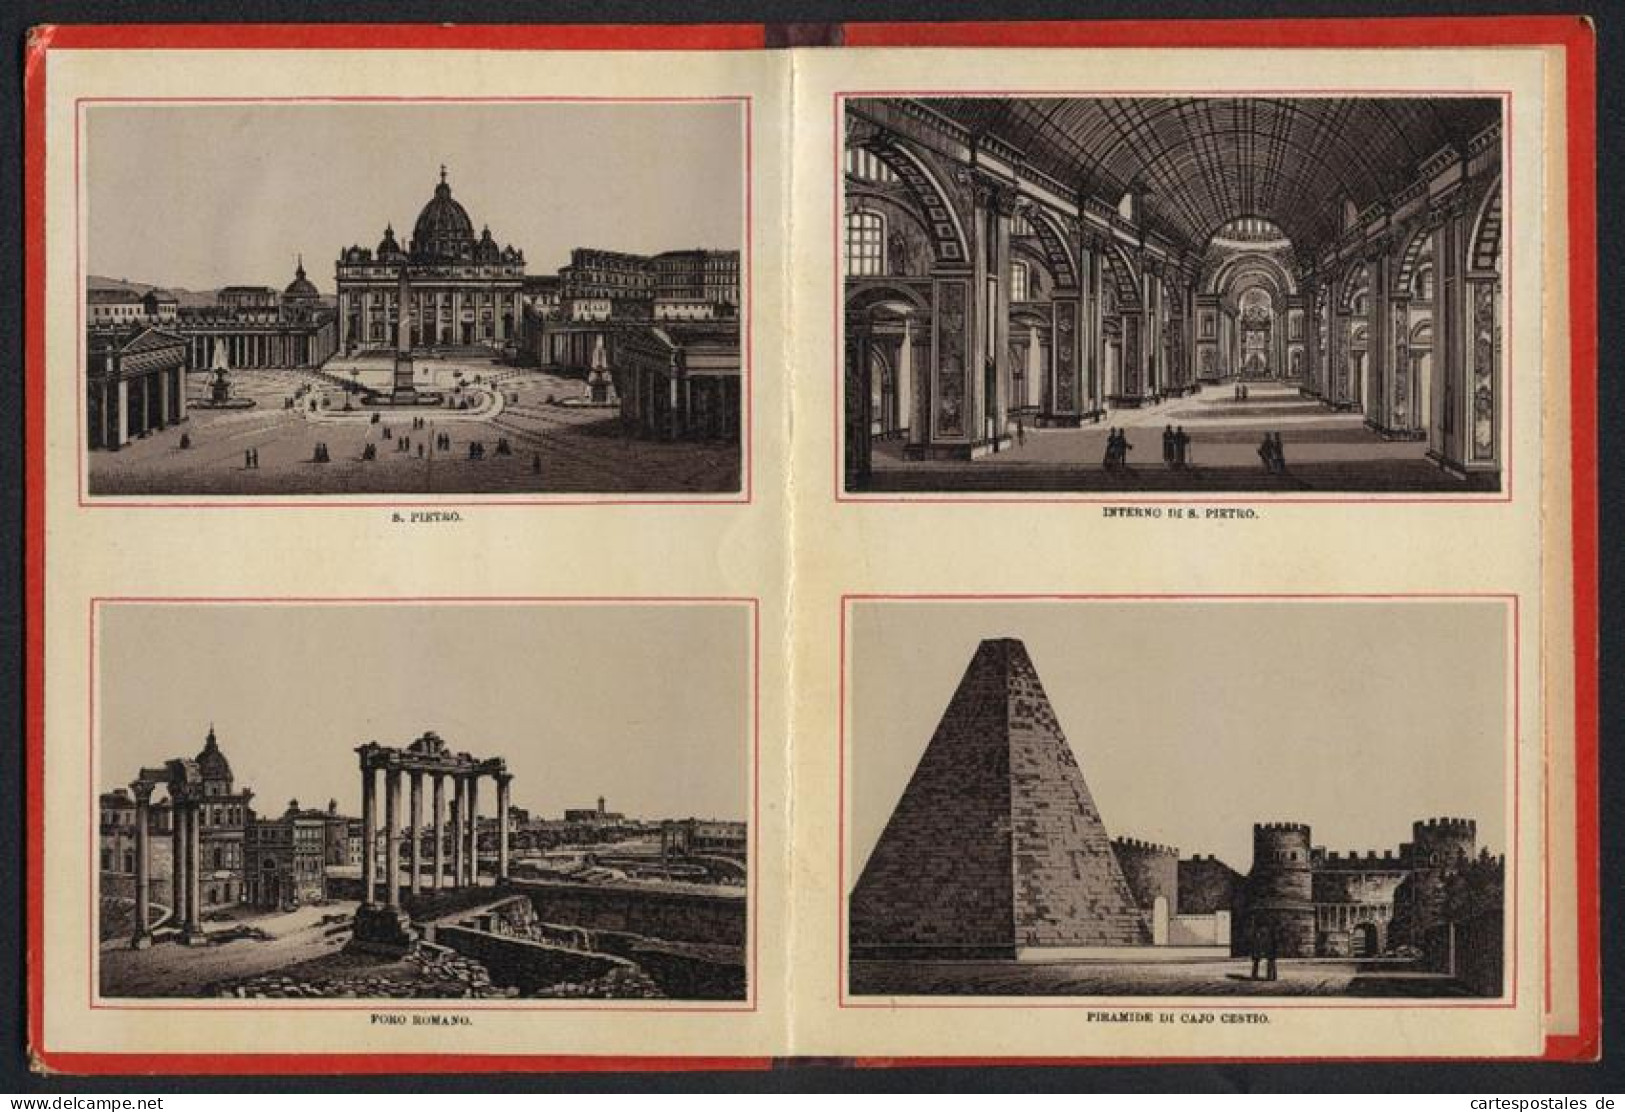 Leporello-Album 24 Lithographie-Ansichten Roma, S. Pietro, Piramide Di Cajo Cestio, Fontana Di Trevi, Piazza Colonna  - Litografia